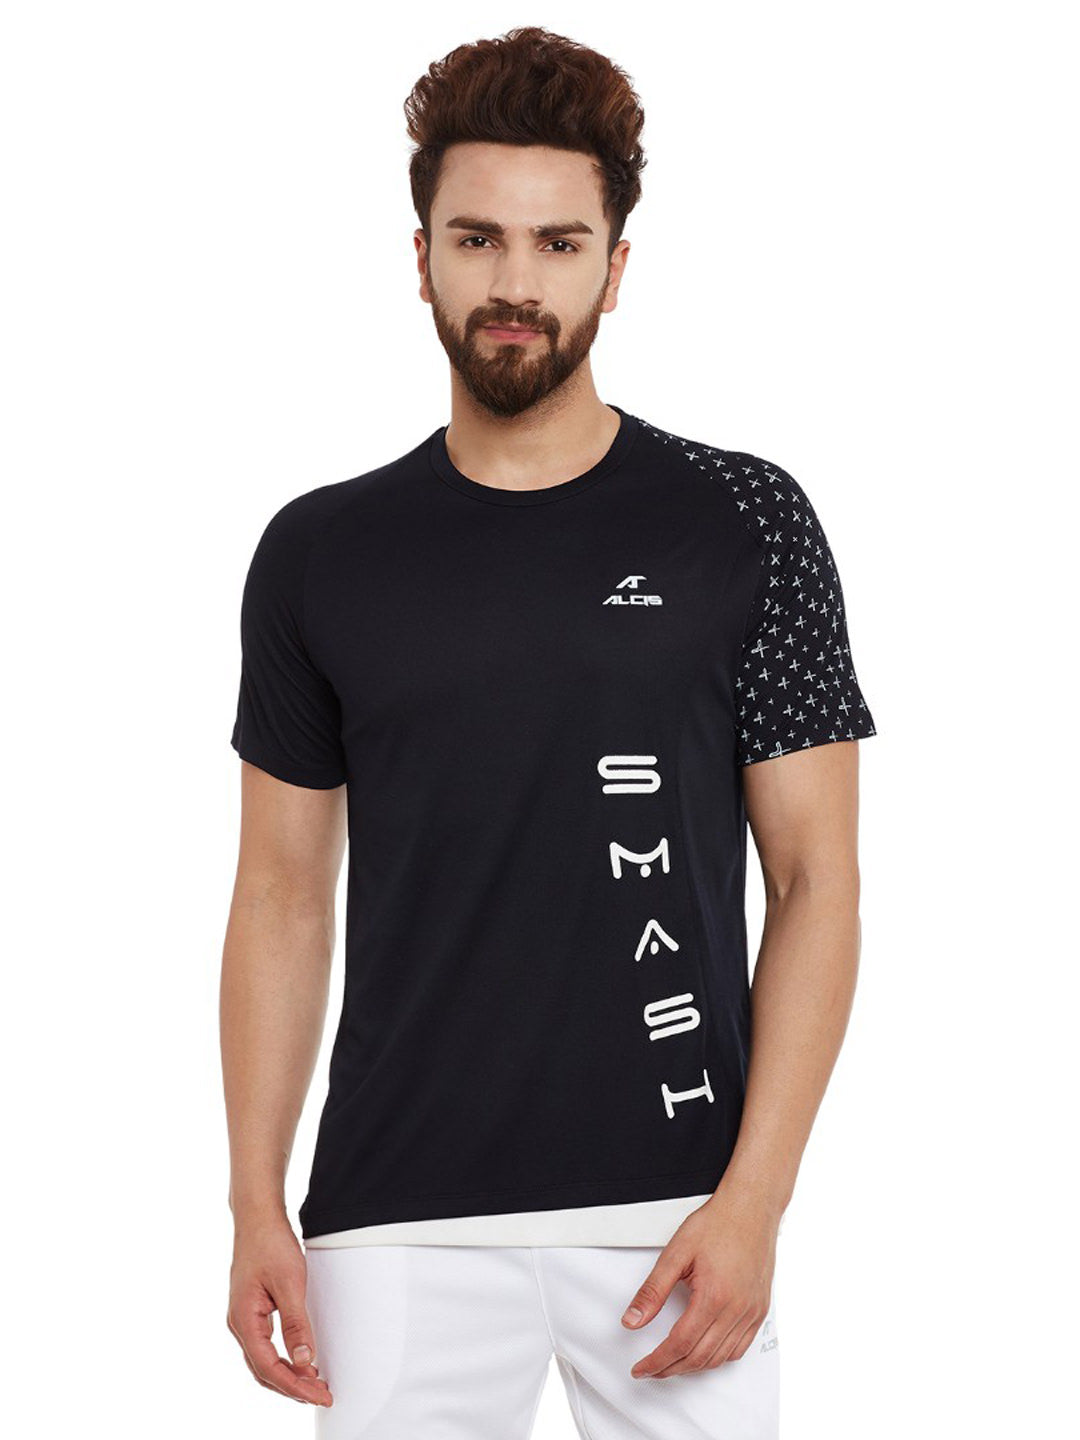 Alcis Men Black Printed Round Neck Tennis Pro T-shirt AKTNMTE0320079-S